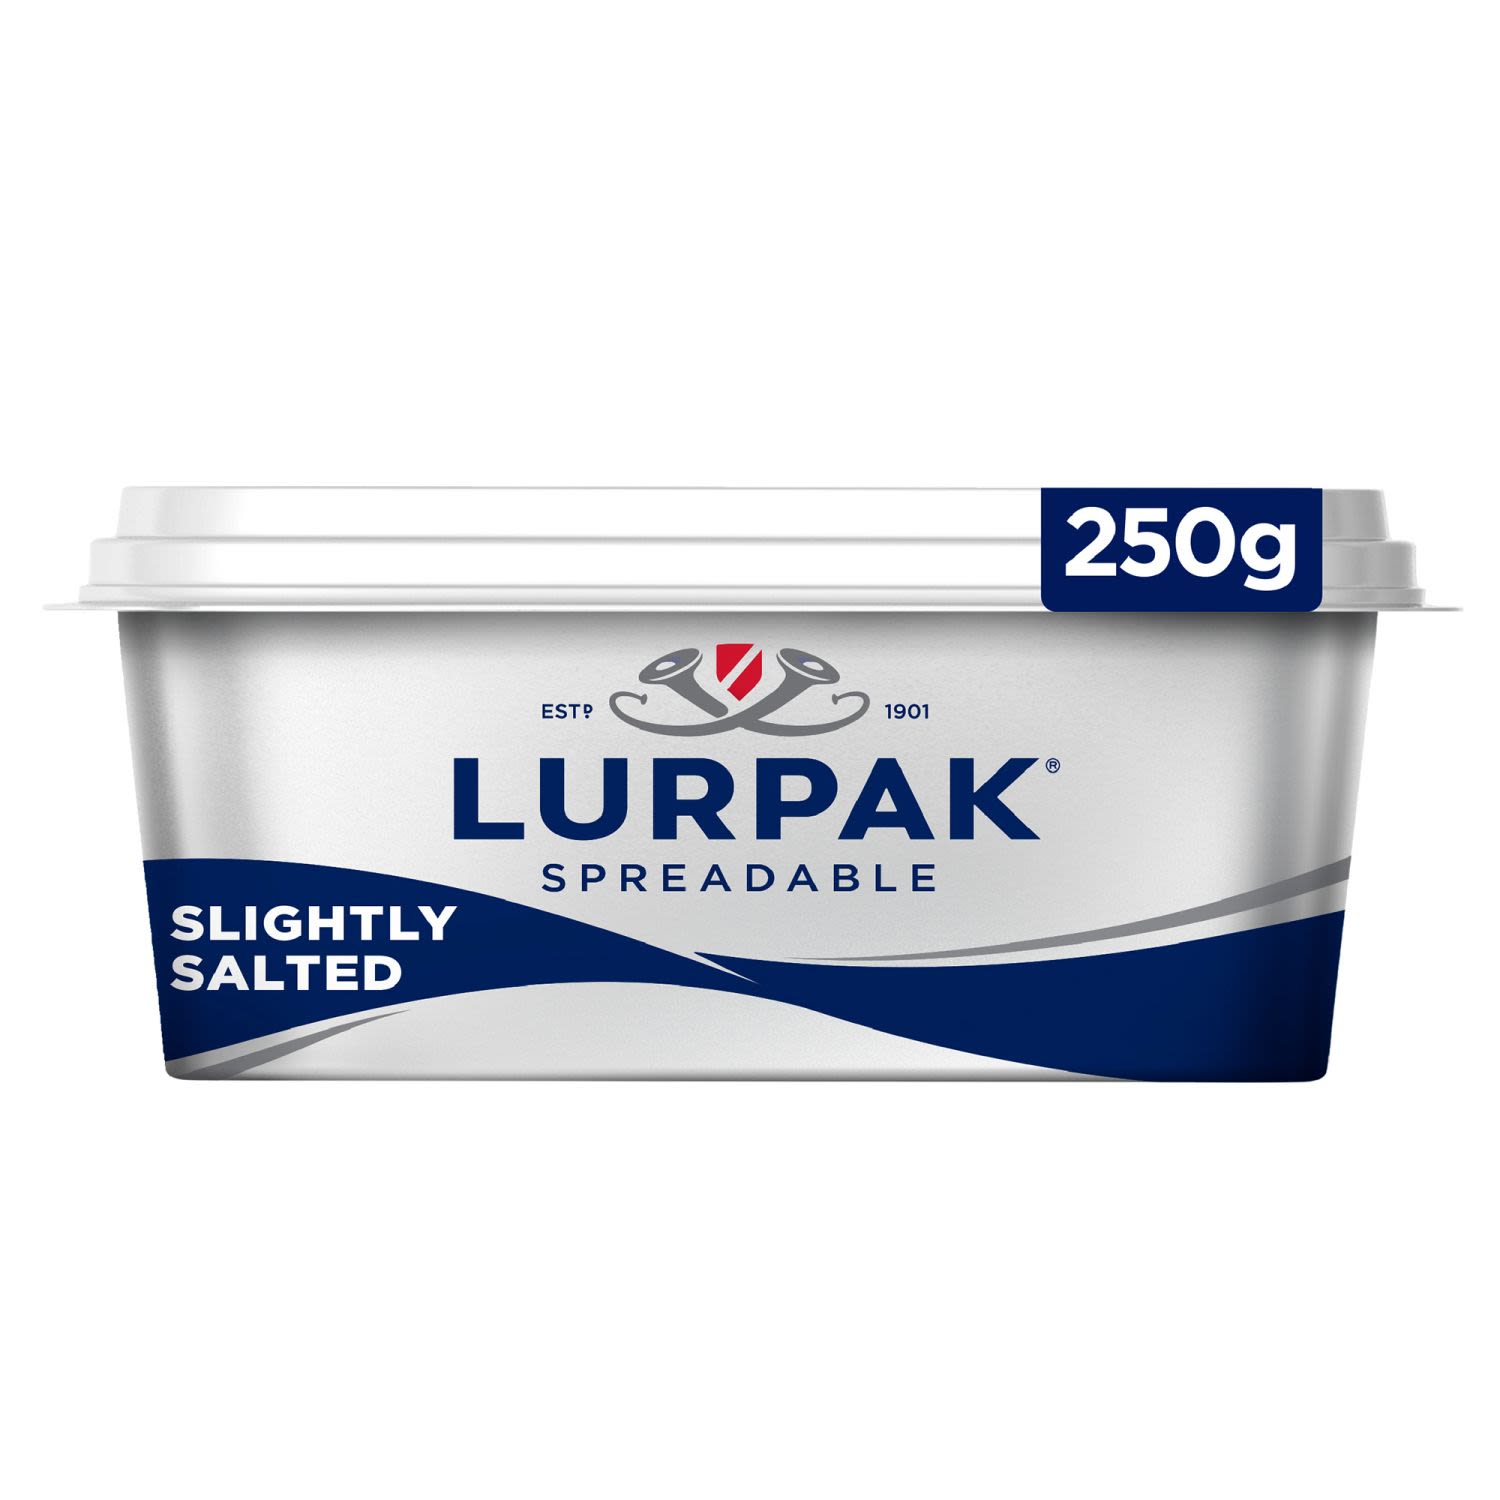 Lurpak Spreadable Slightly Salted, 250 Gram